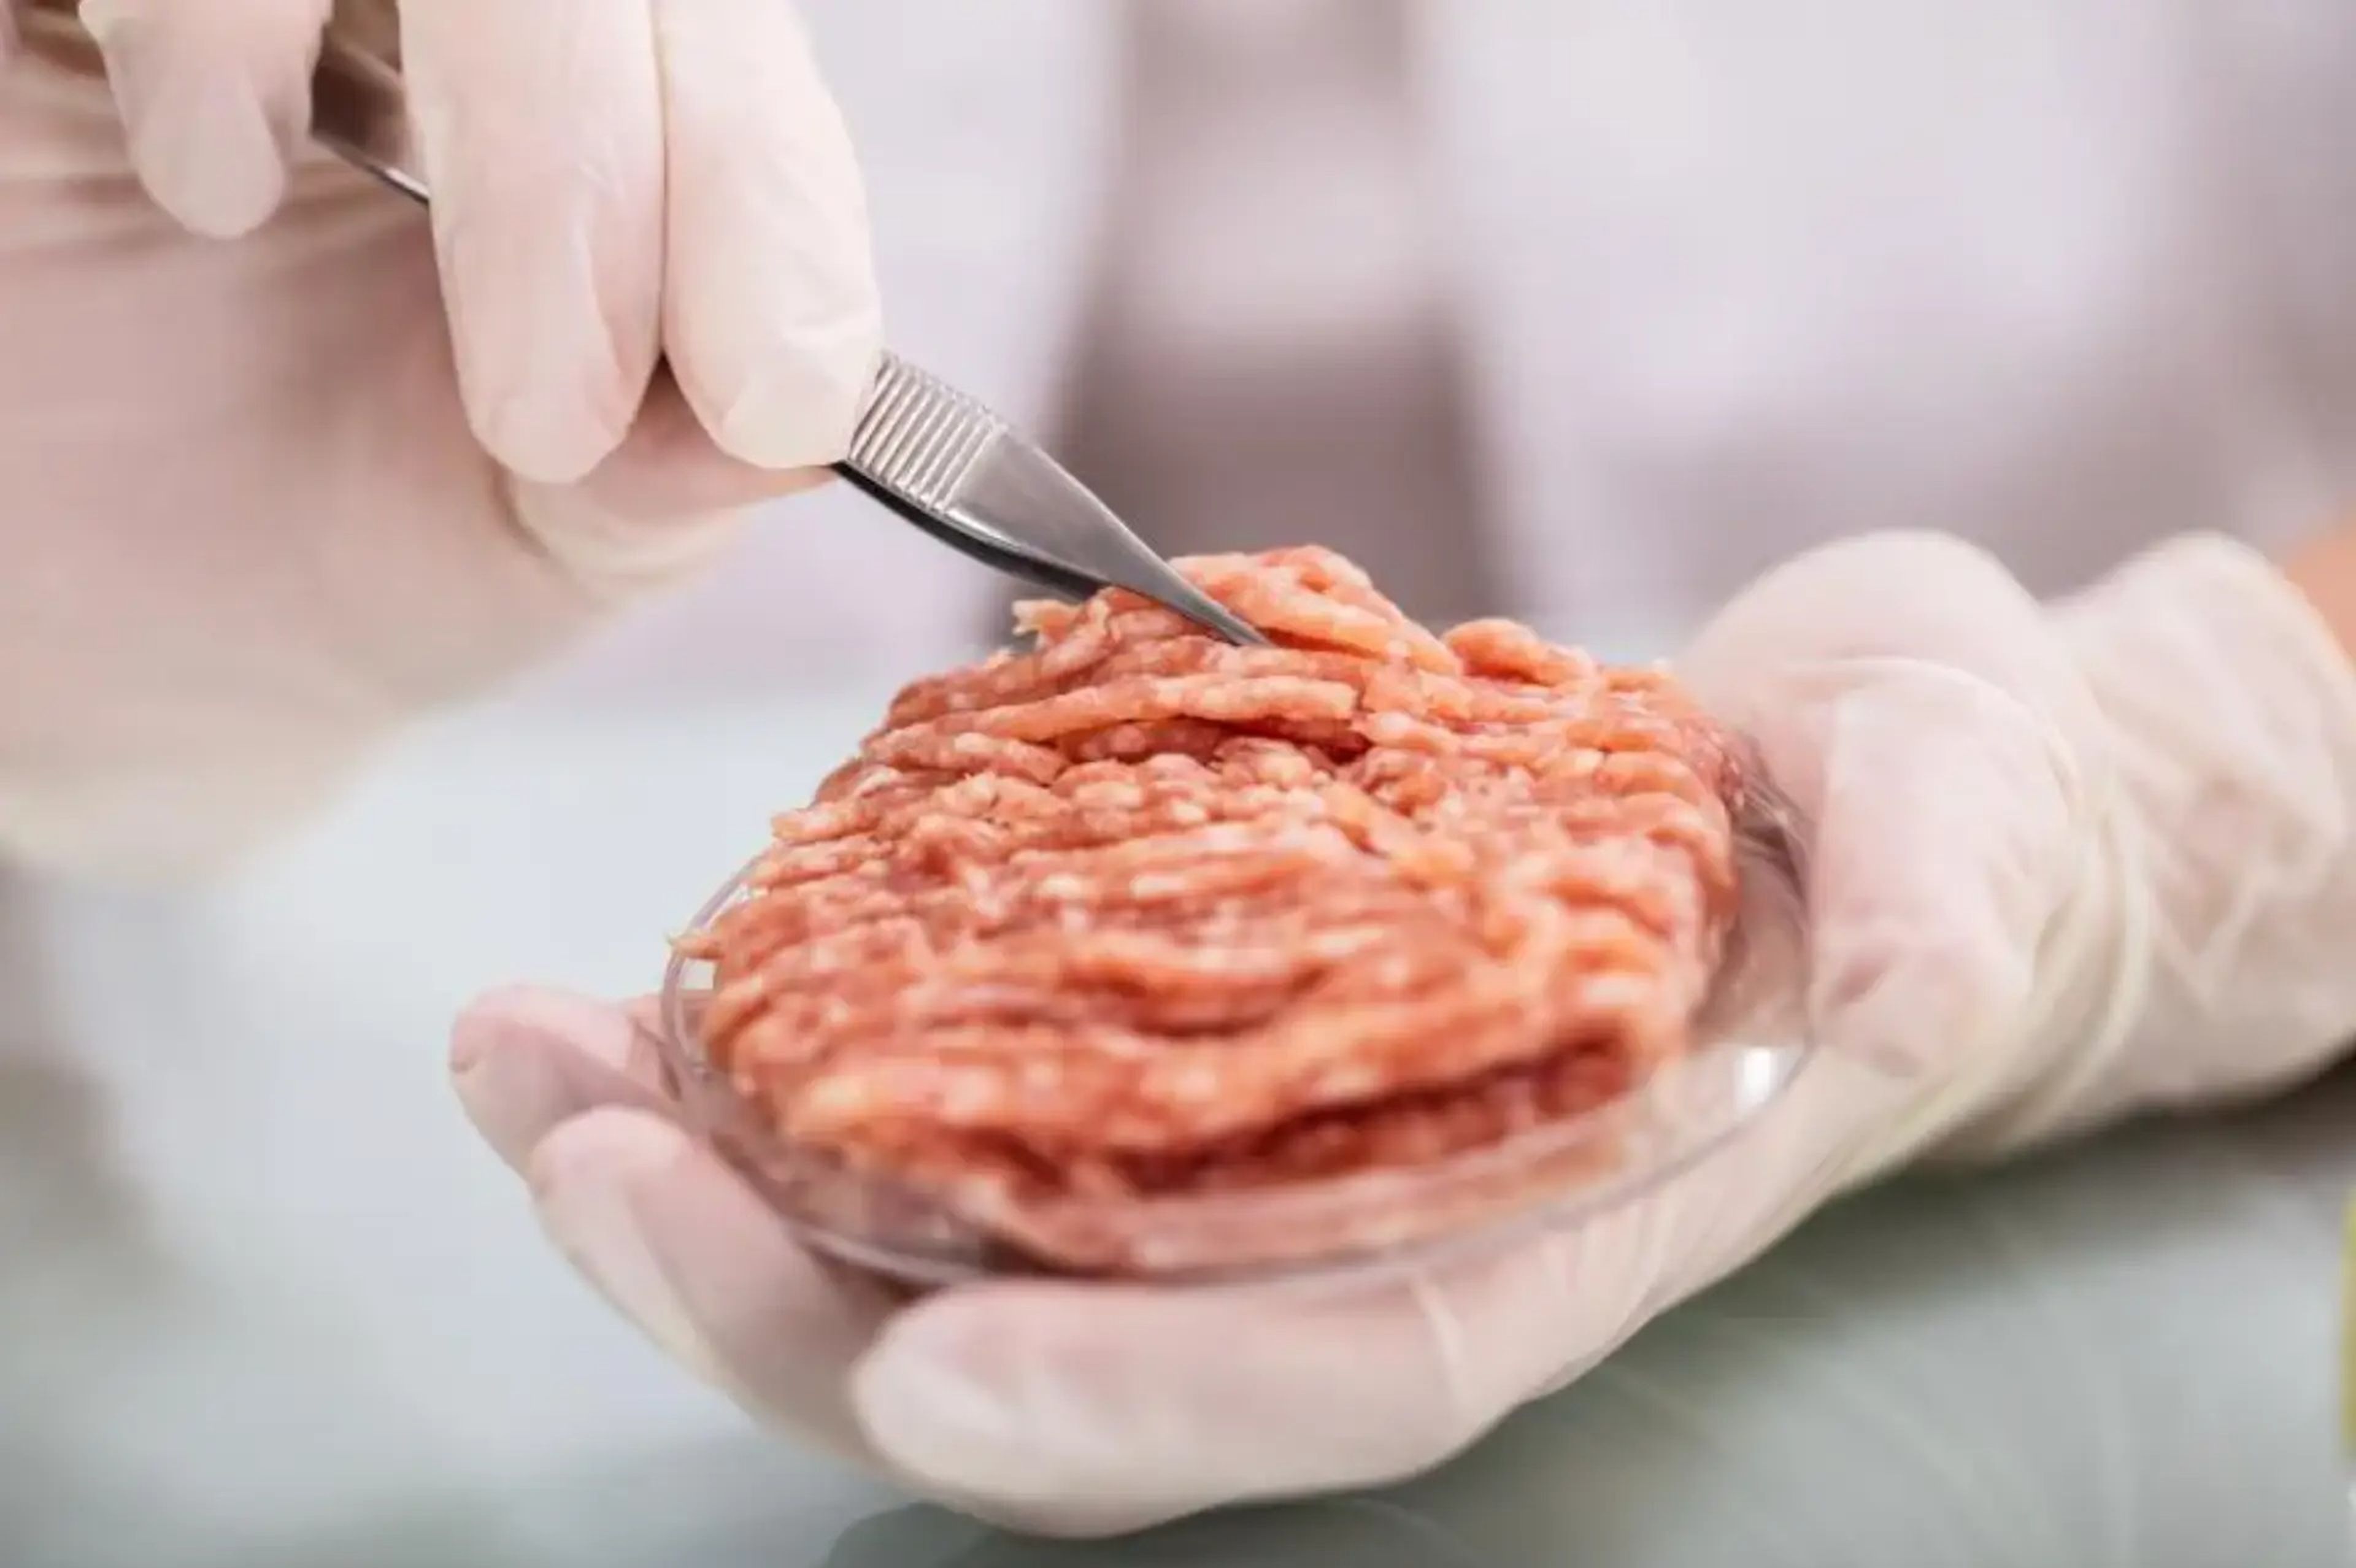 يمكن استخدام اللحوم المصنعة في المختبر يومًا ما لإطعام رواد الفضاء في مهمات الفضاء السحيق.